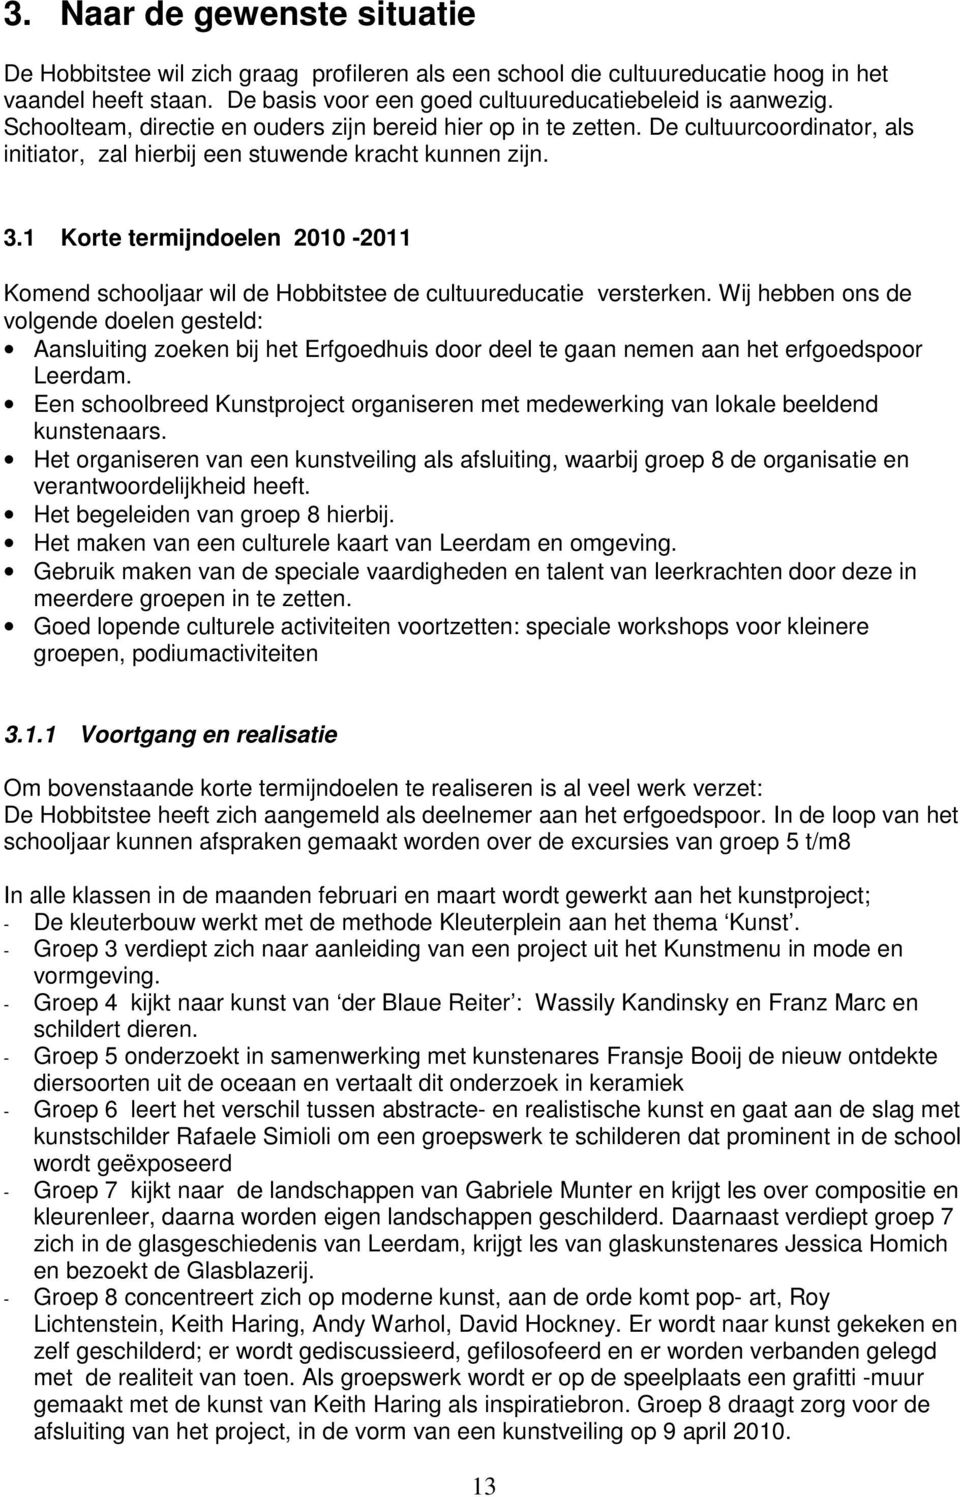 1 Krte termijndelen 2010-2011 Kmend schljr wil de Hbbitstee de cltredctie versterken.